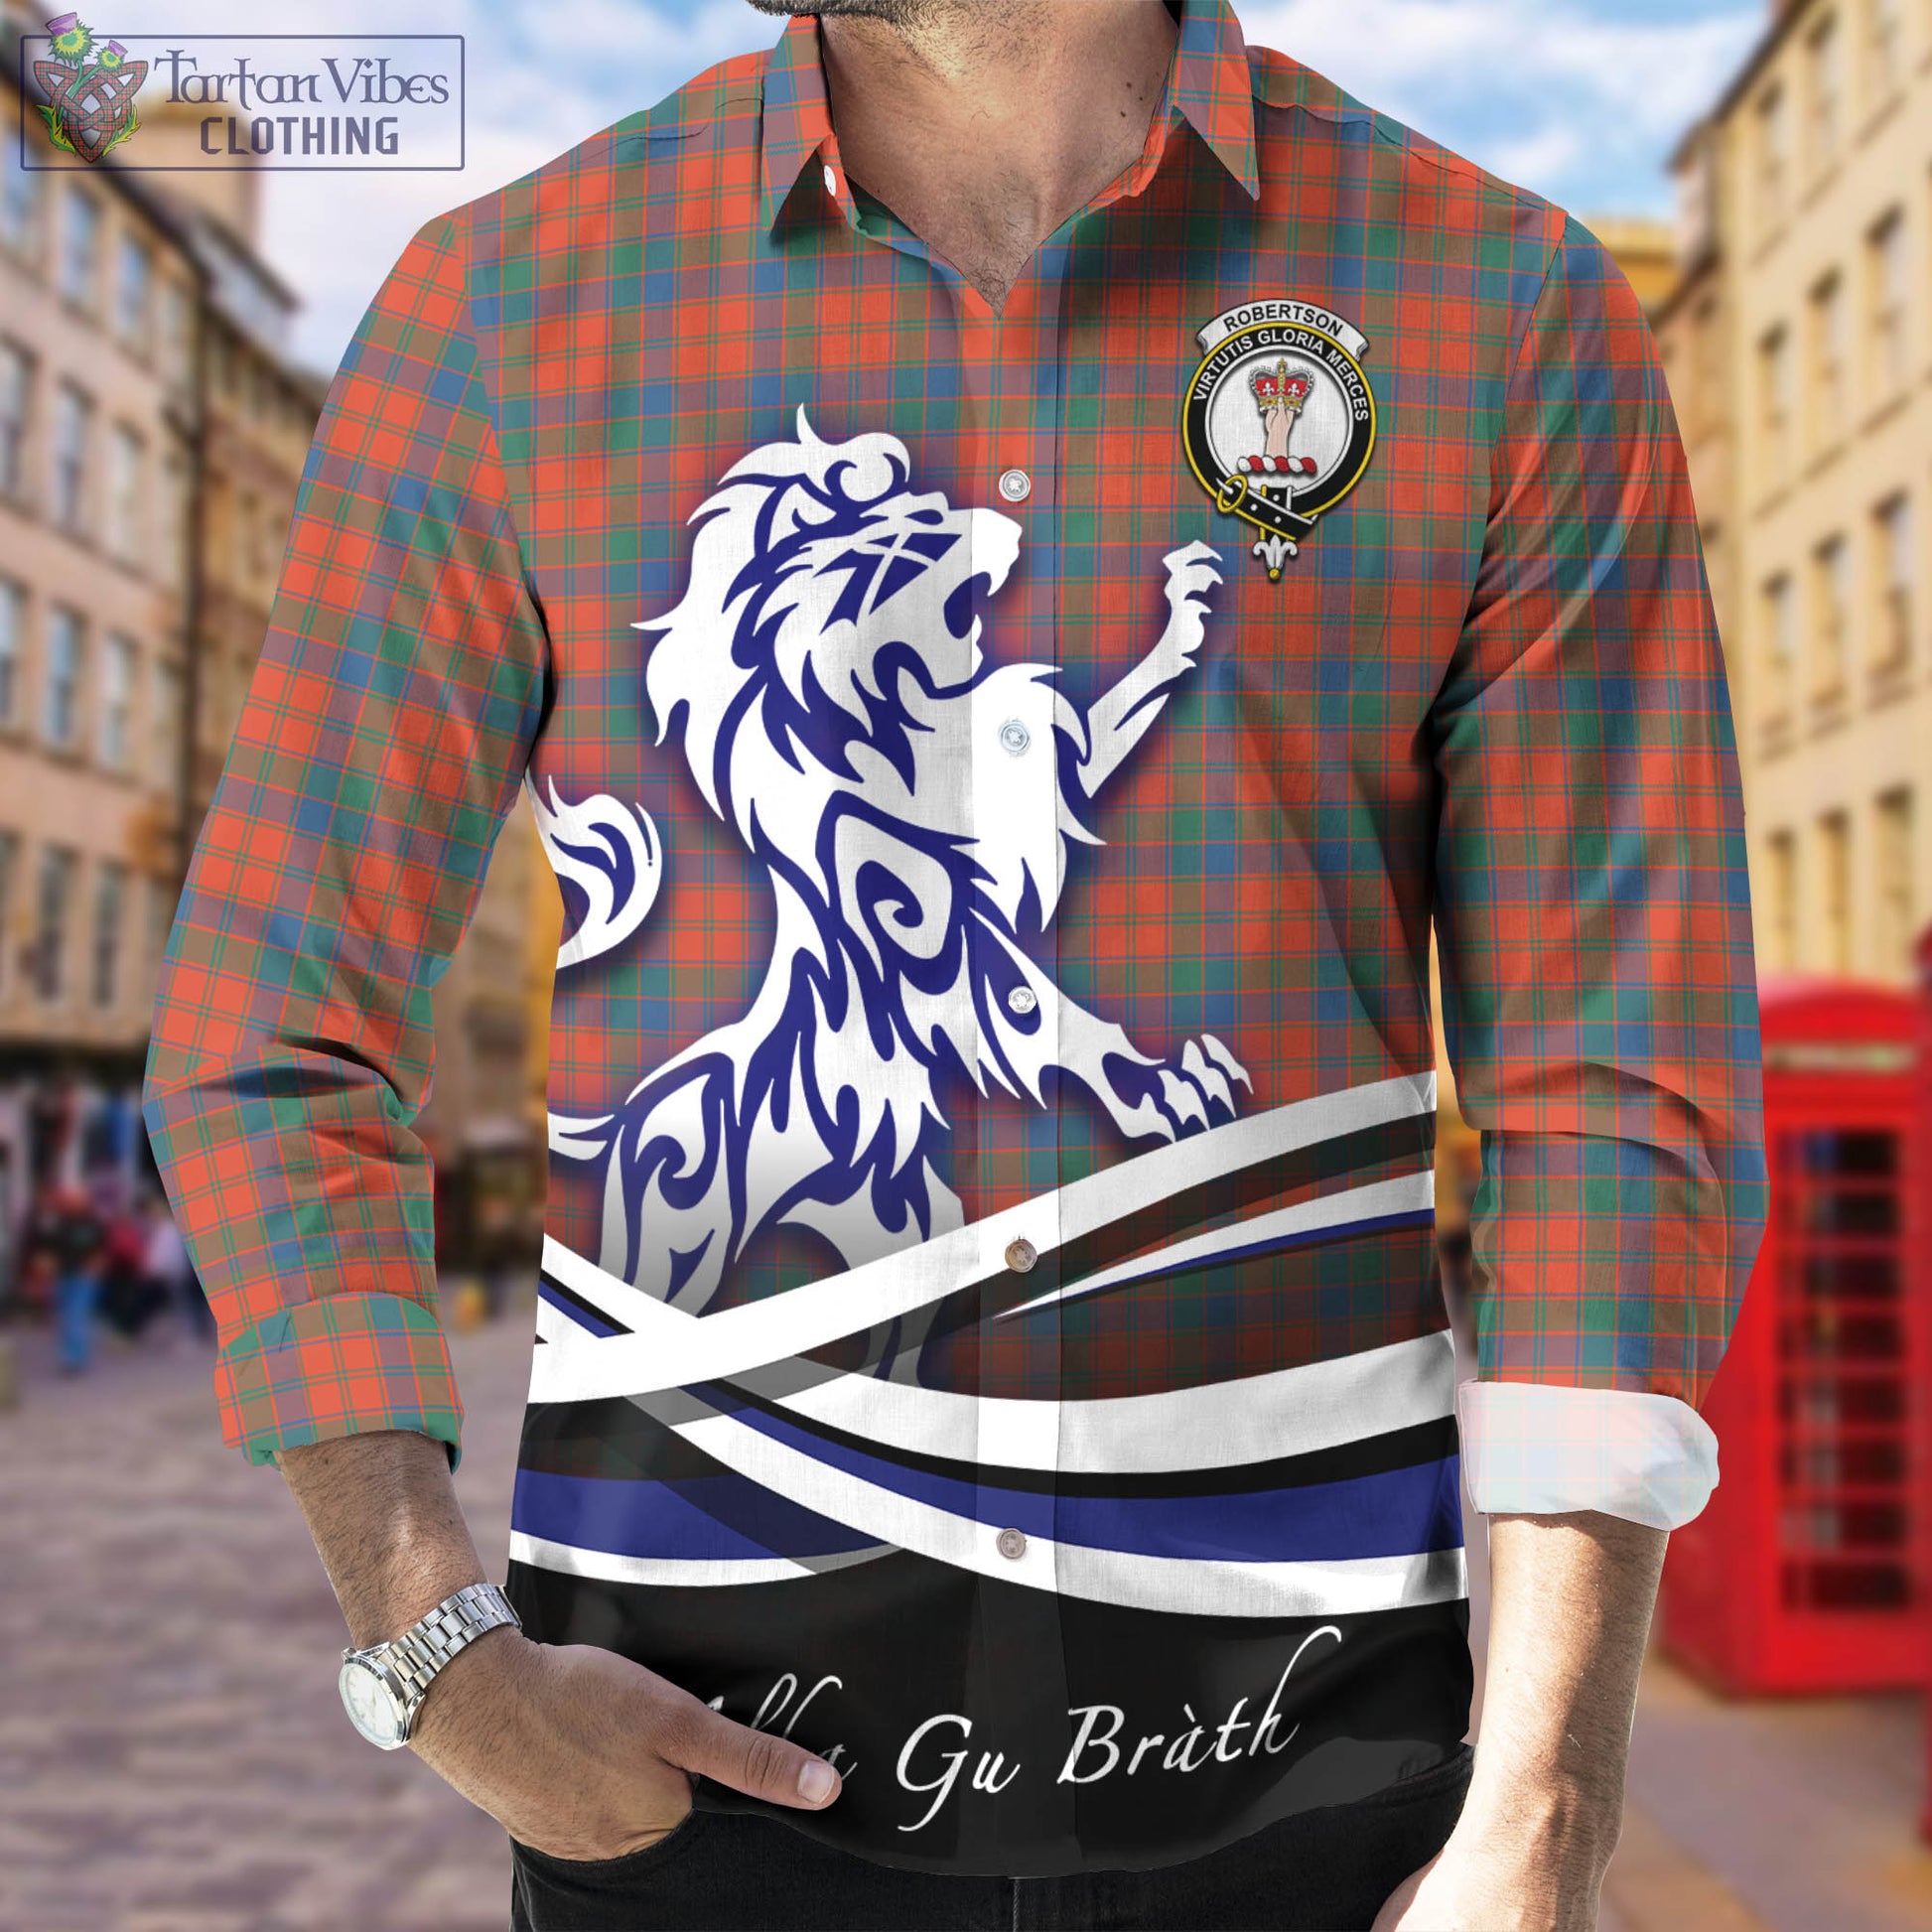 robertson-ancient-tartan-long-sleeve-button-up-shirt-with-alba-gu-brath-regal-lion-emblem